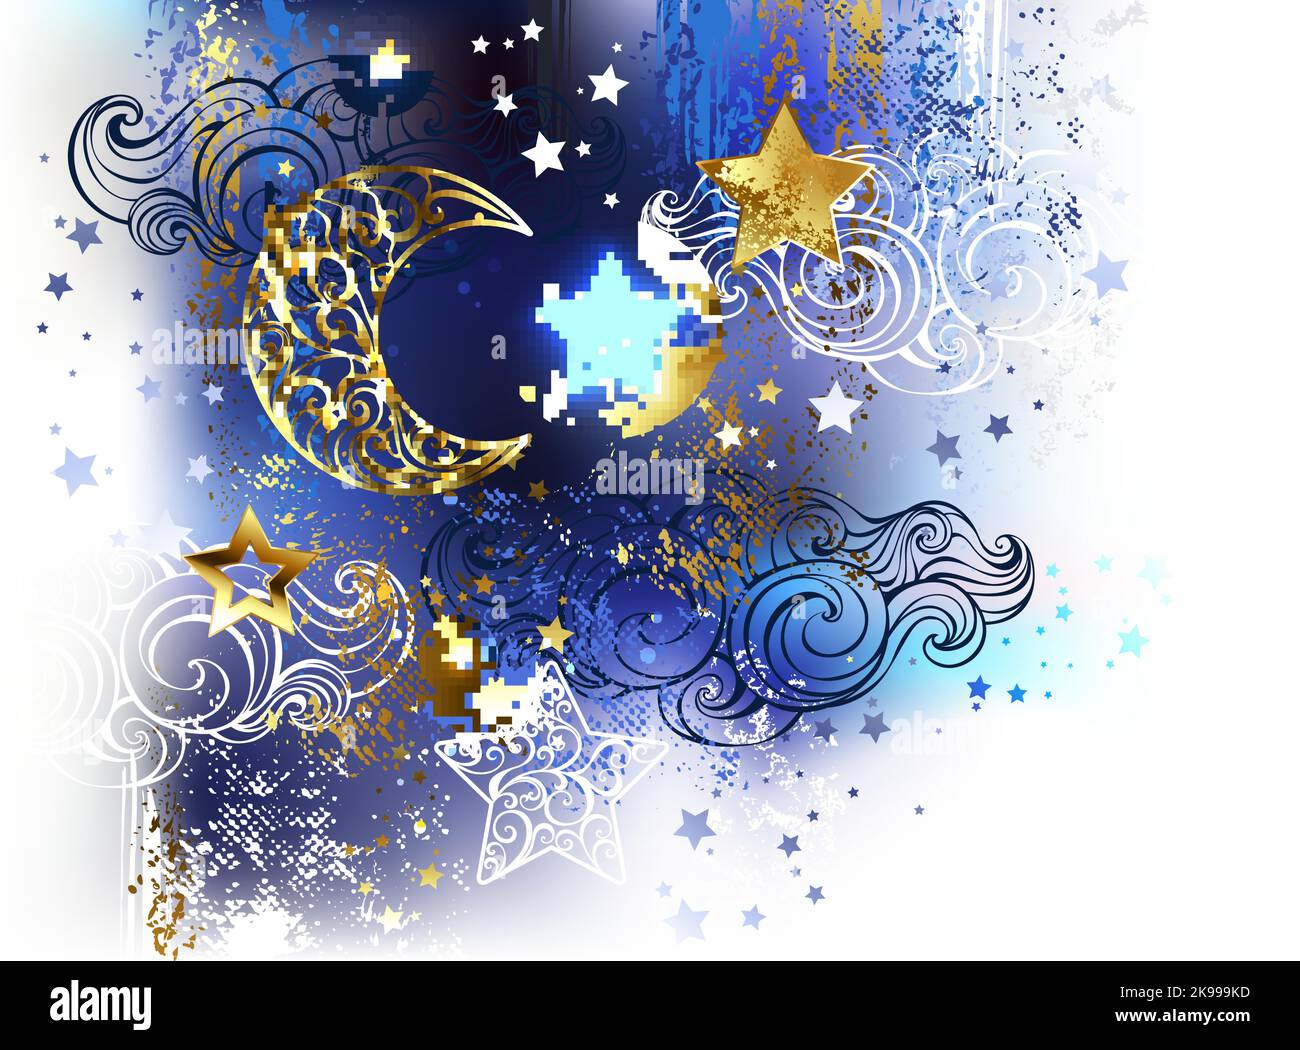 Lune en croissant dorée à motifs avec étoiles dorées et blanches sur fond blanc peint avec peinture acrylique bleue et noire. Lune d'or. aap d'origine Illustration de Vecteur